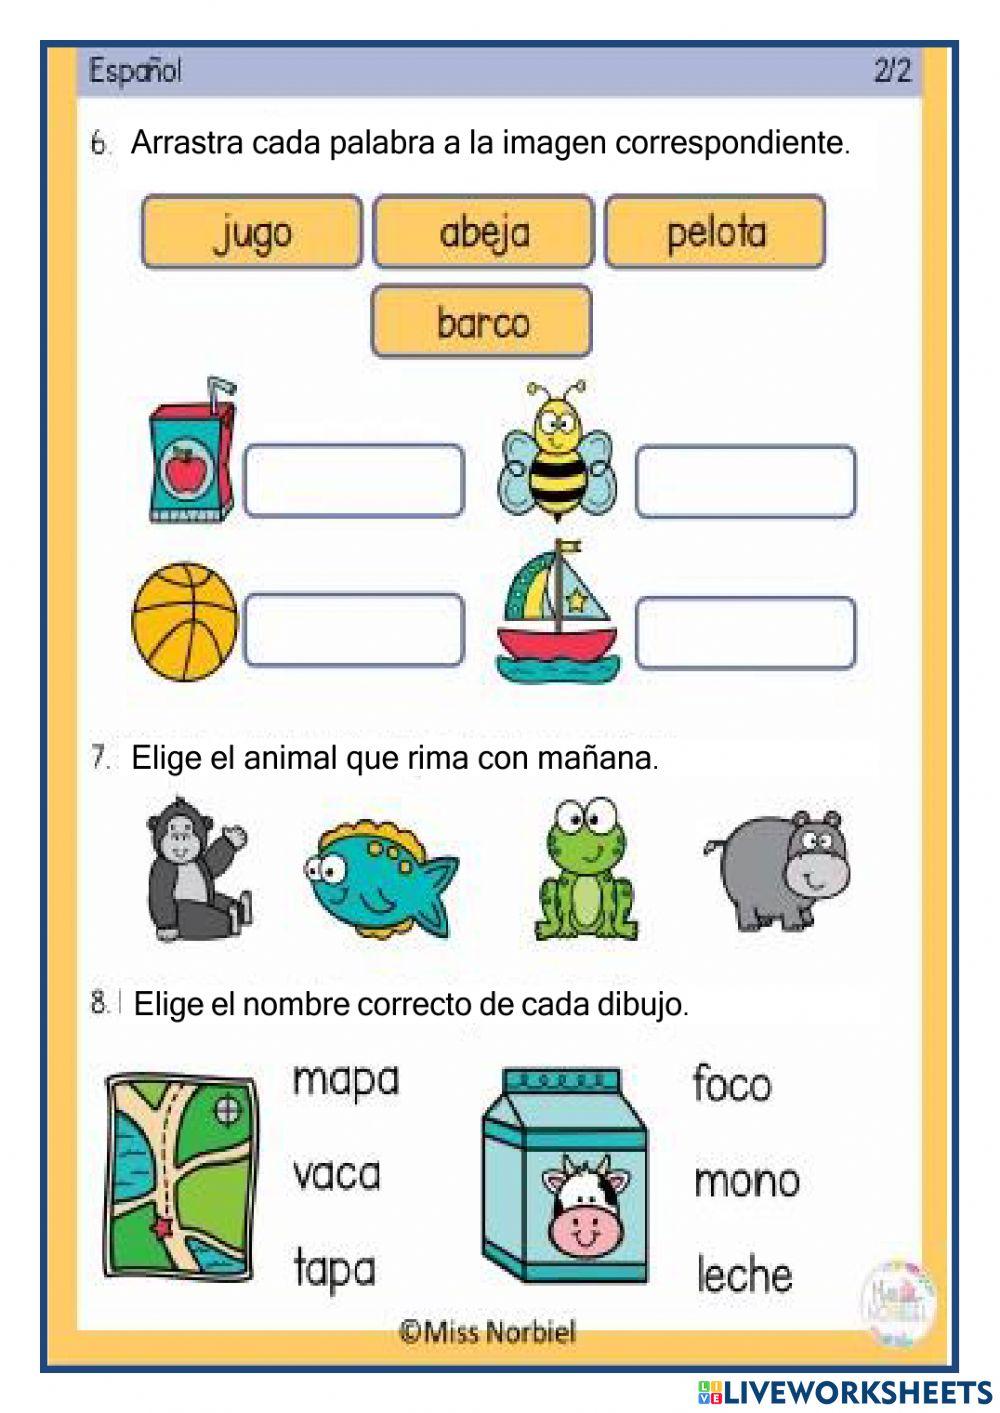 Examen diagnòstico español activity | Live Worksheets